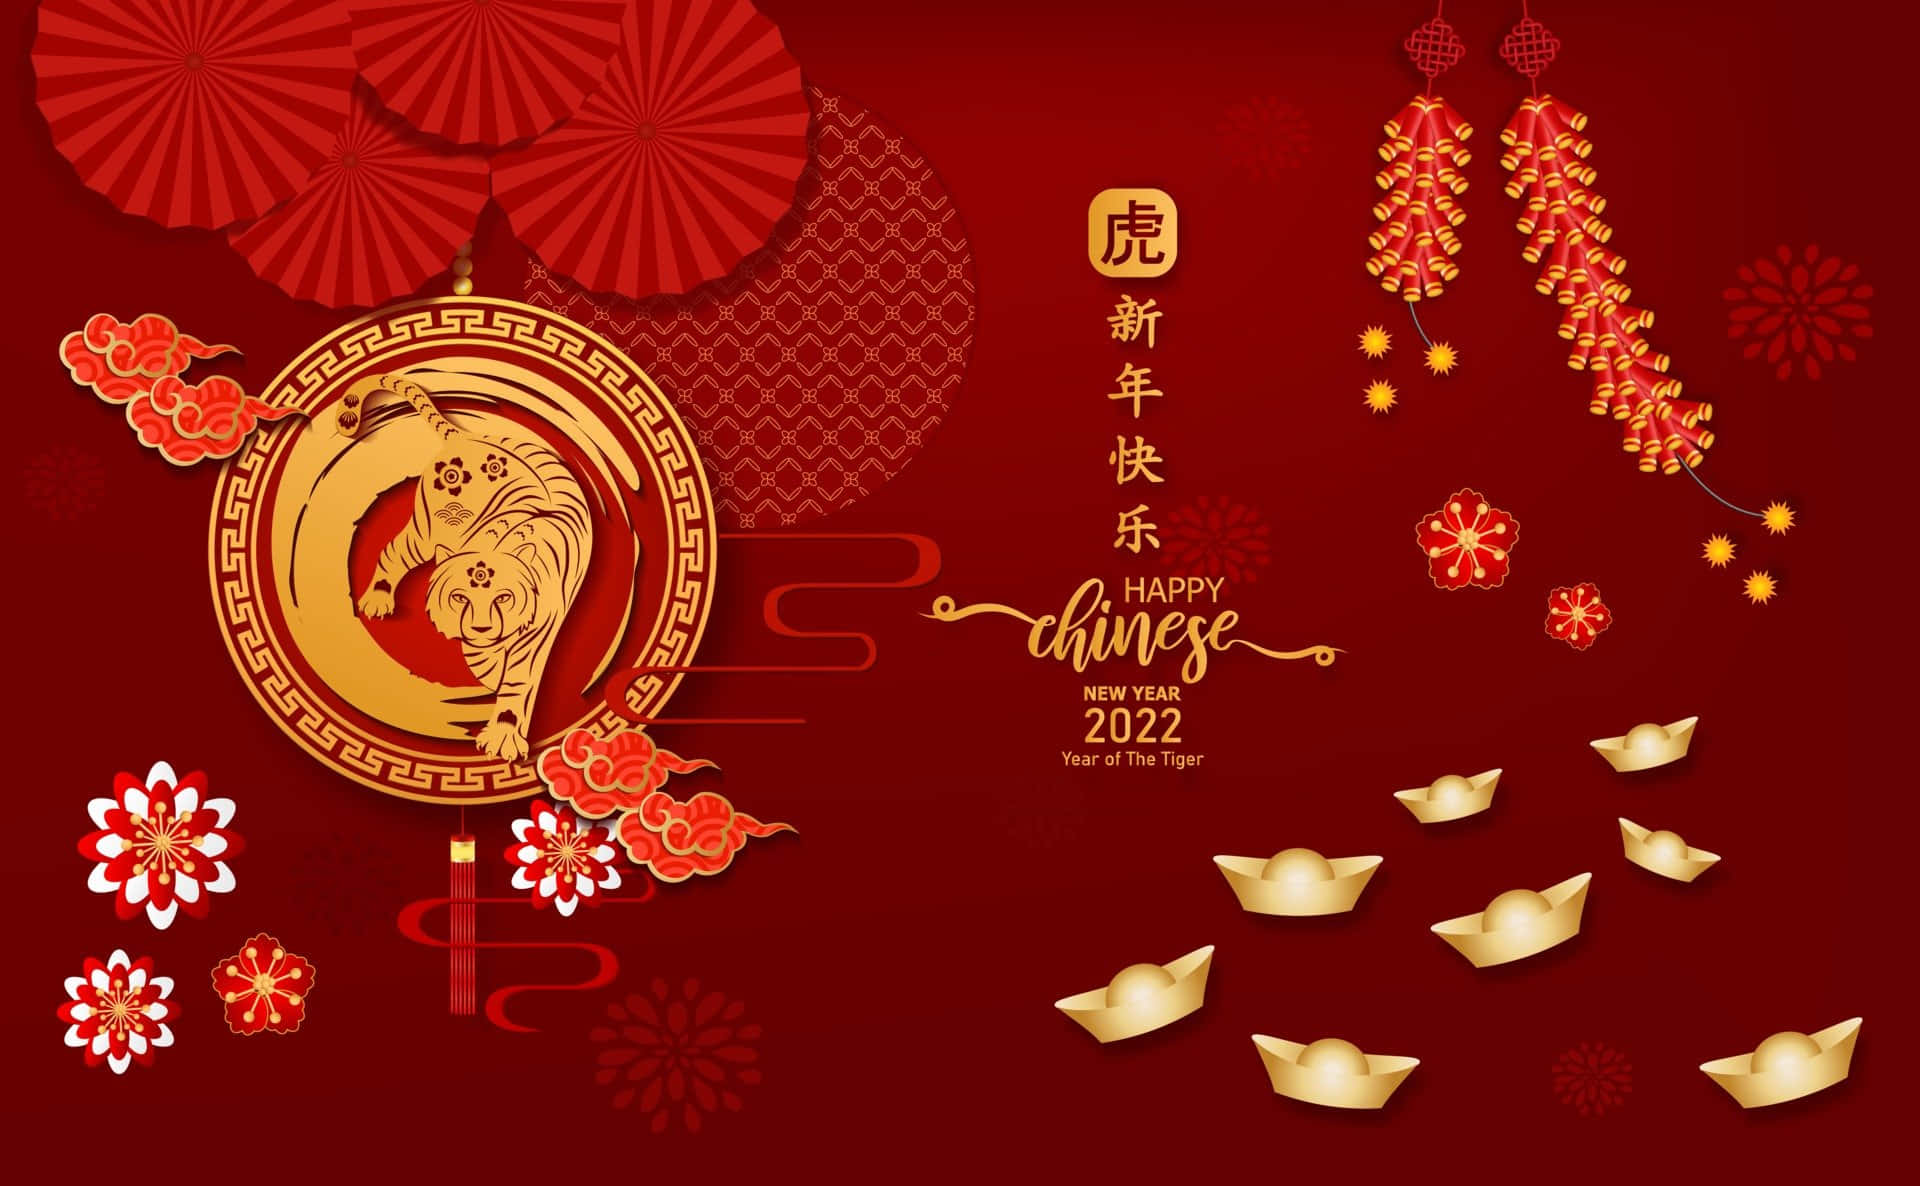 Kinesisknytårsbaggrund For 2020 Med Kinesiske Lanterner Og Dekorationer.